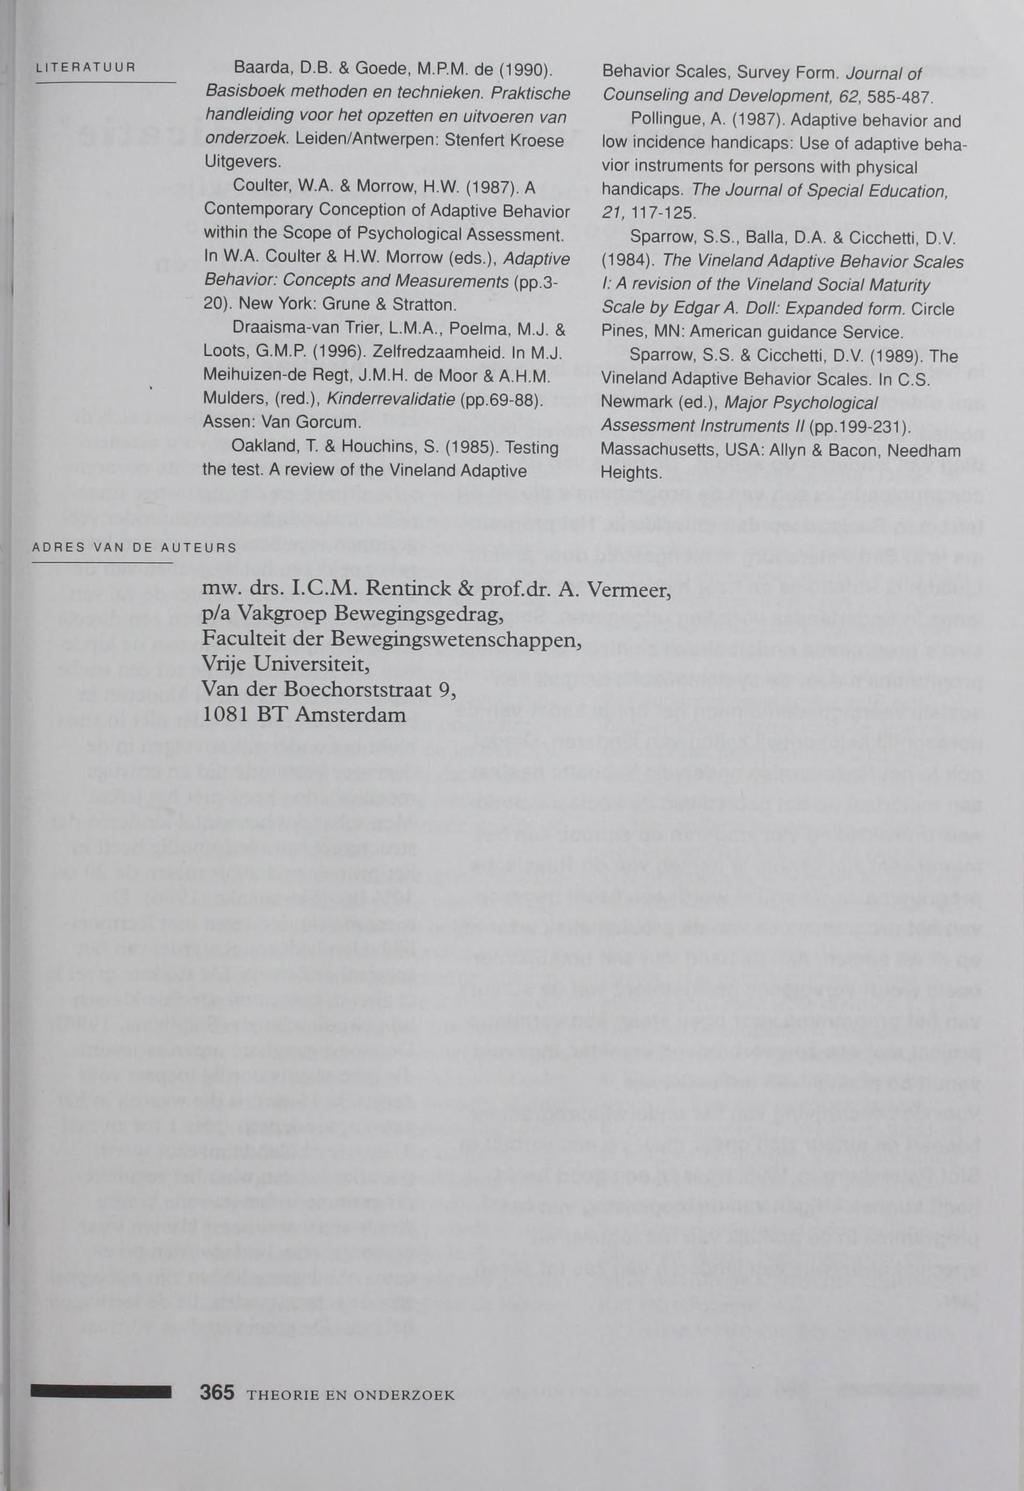 LITERATUUR Baarda, D.B. & Goede, M.P.M. de (1990). Basisboek methoden en technieken. Praktische handleiding voor het opzetten en uitvoeren van onderzoek. Leiden/Antwerpen: Stenfert Kroese Uitgevers.